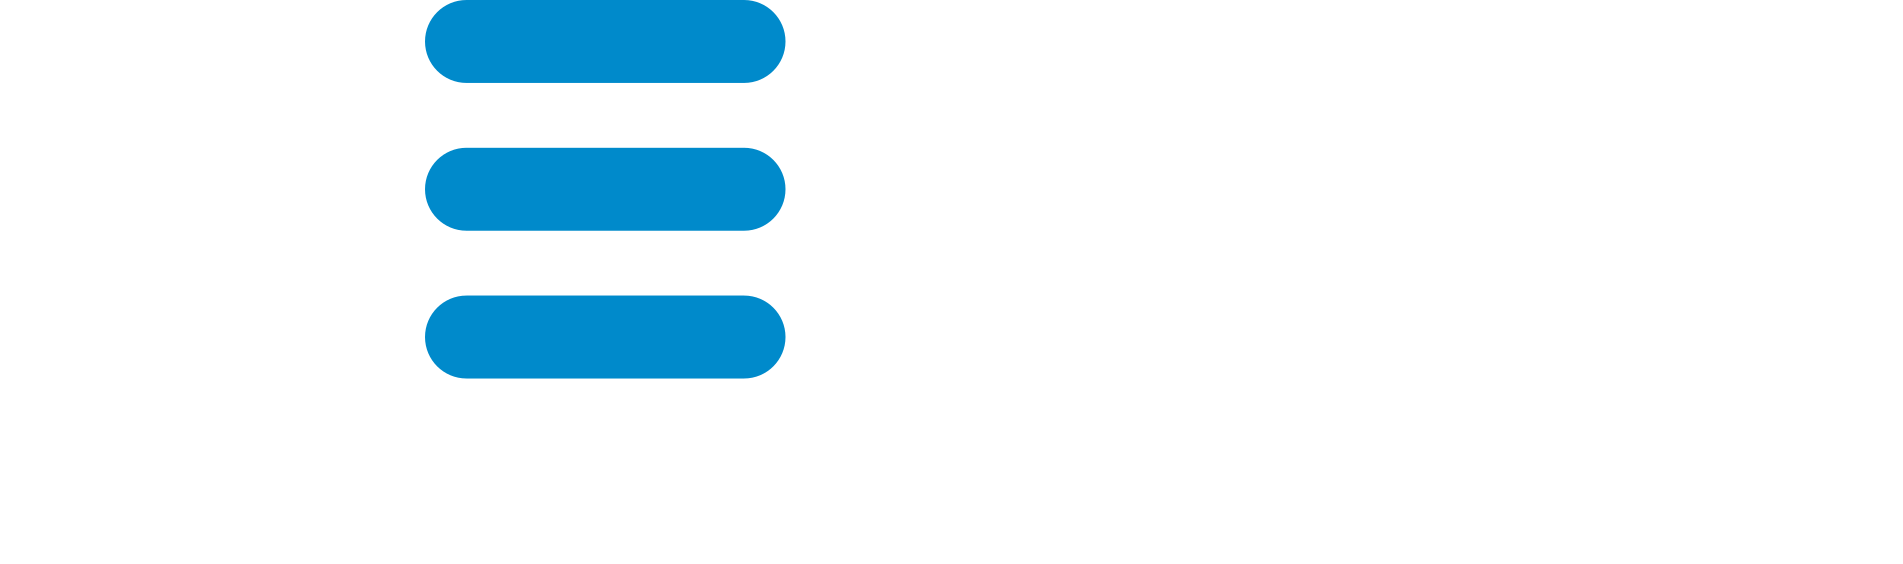 Nerve documentation logo